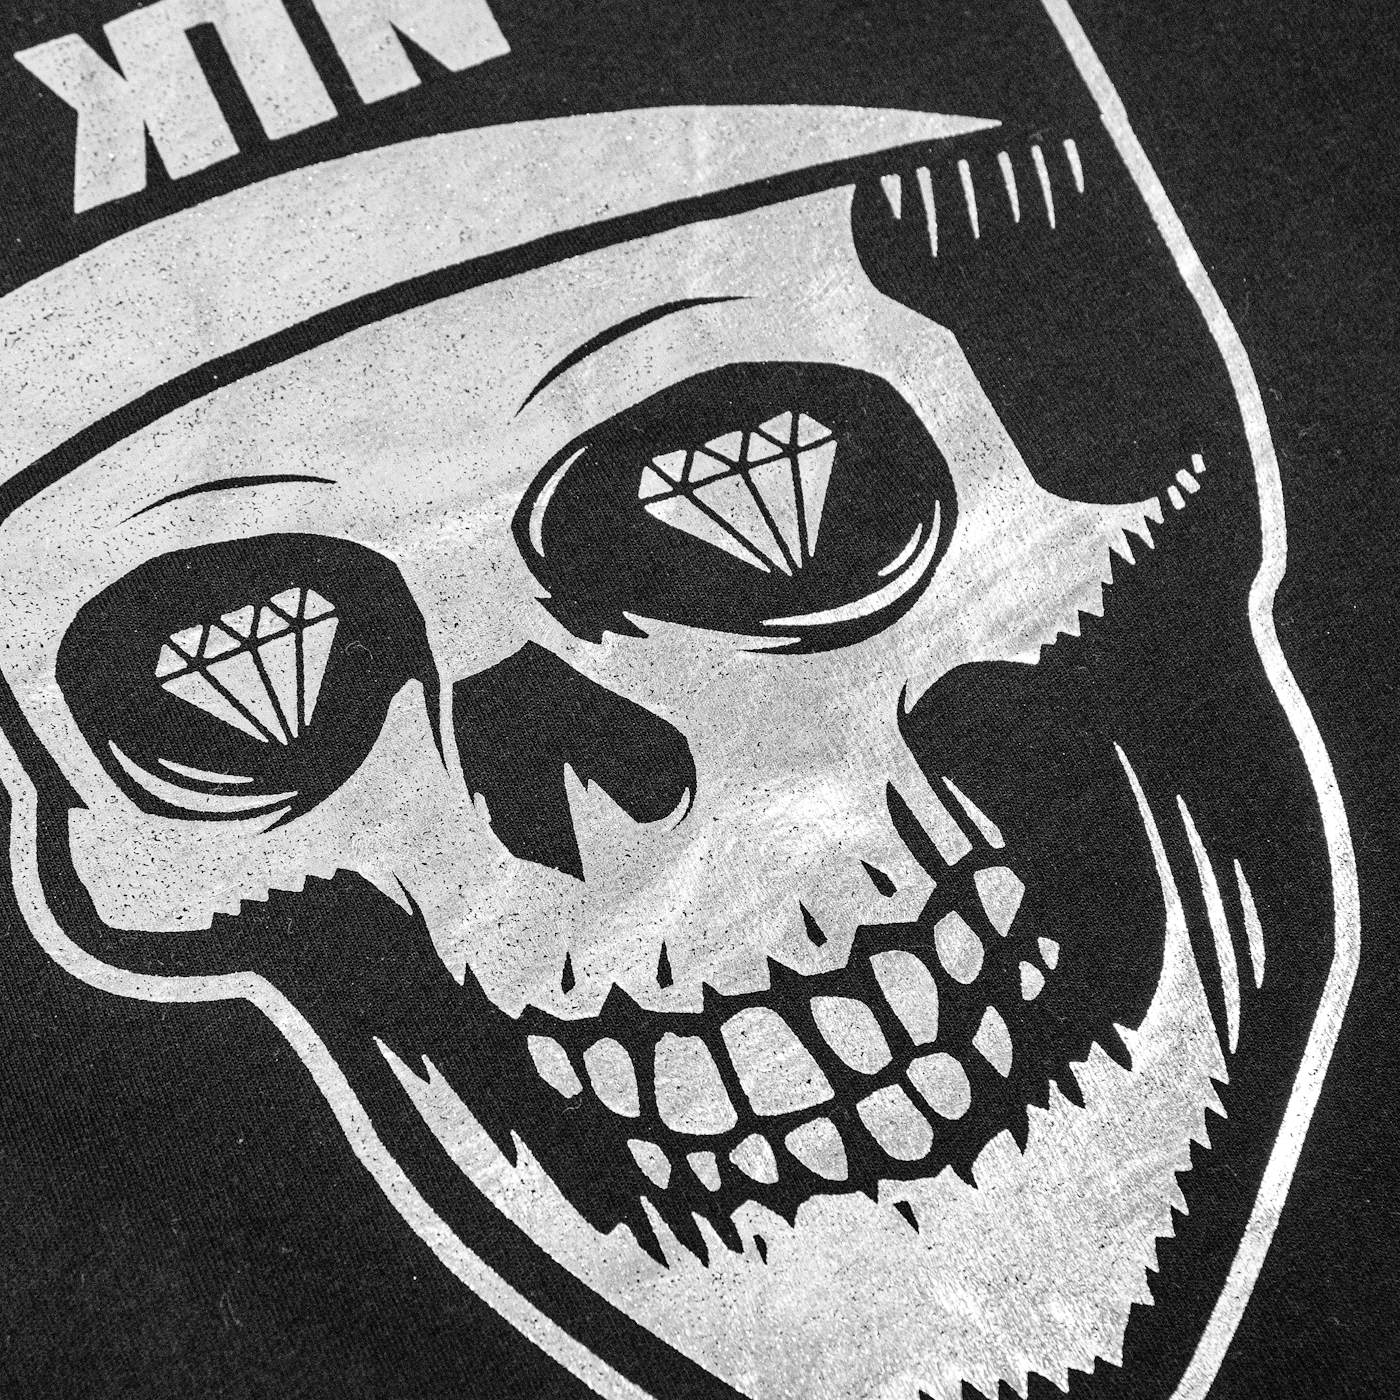 Kill The Noise Skull KTN Silver Foil Sweatshirt